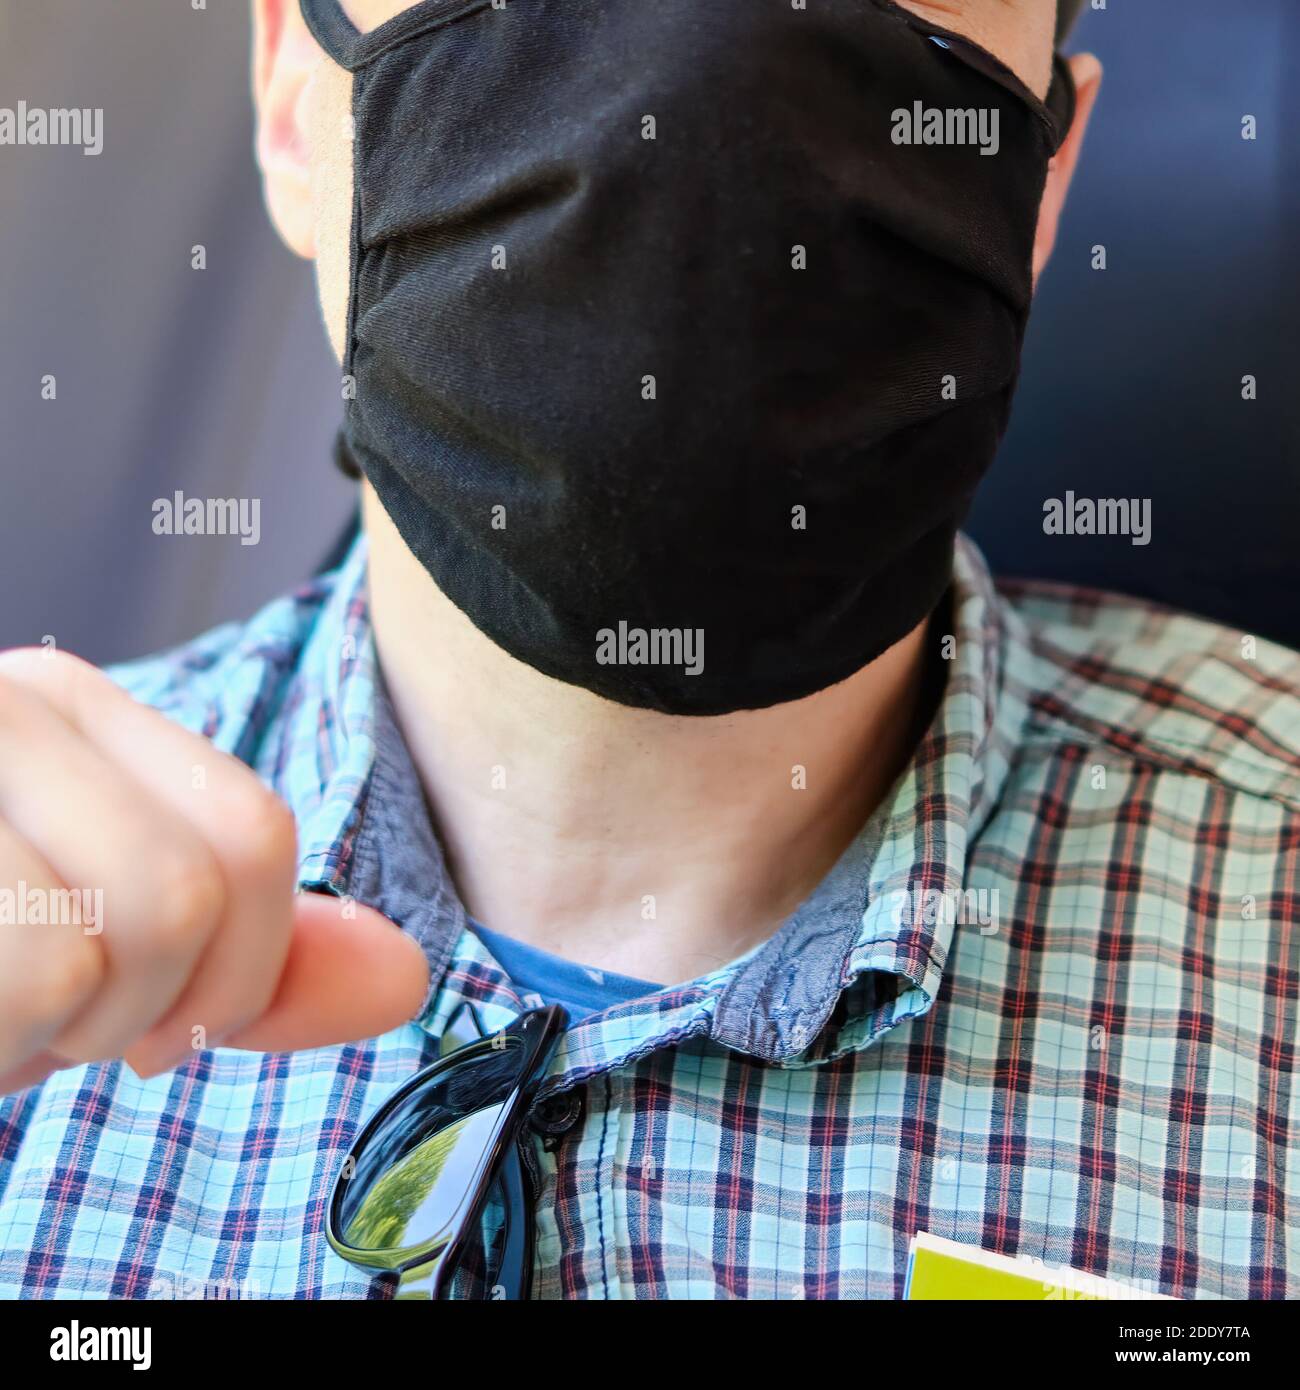 Viso umano con maschera come protezione per bocca e naso come protezione contro corona o covid-19. Foto Stock